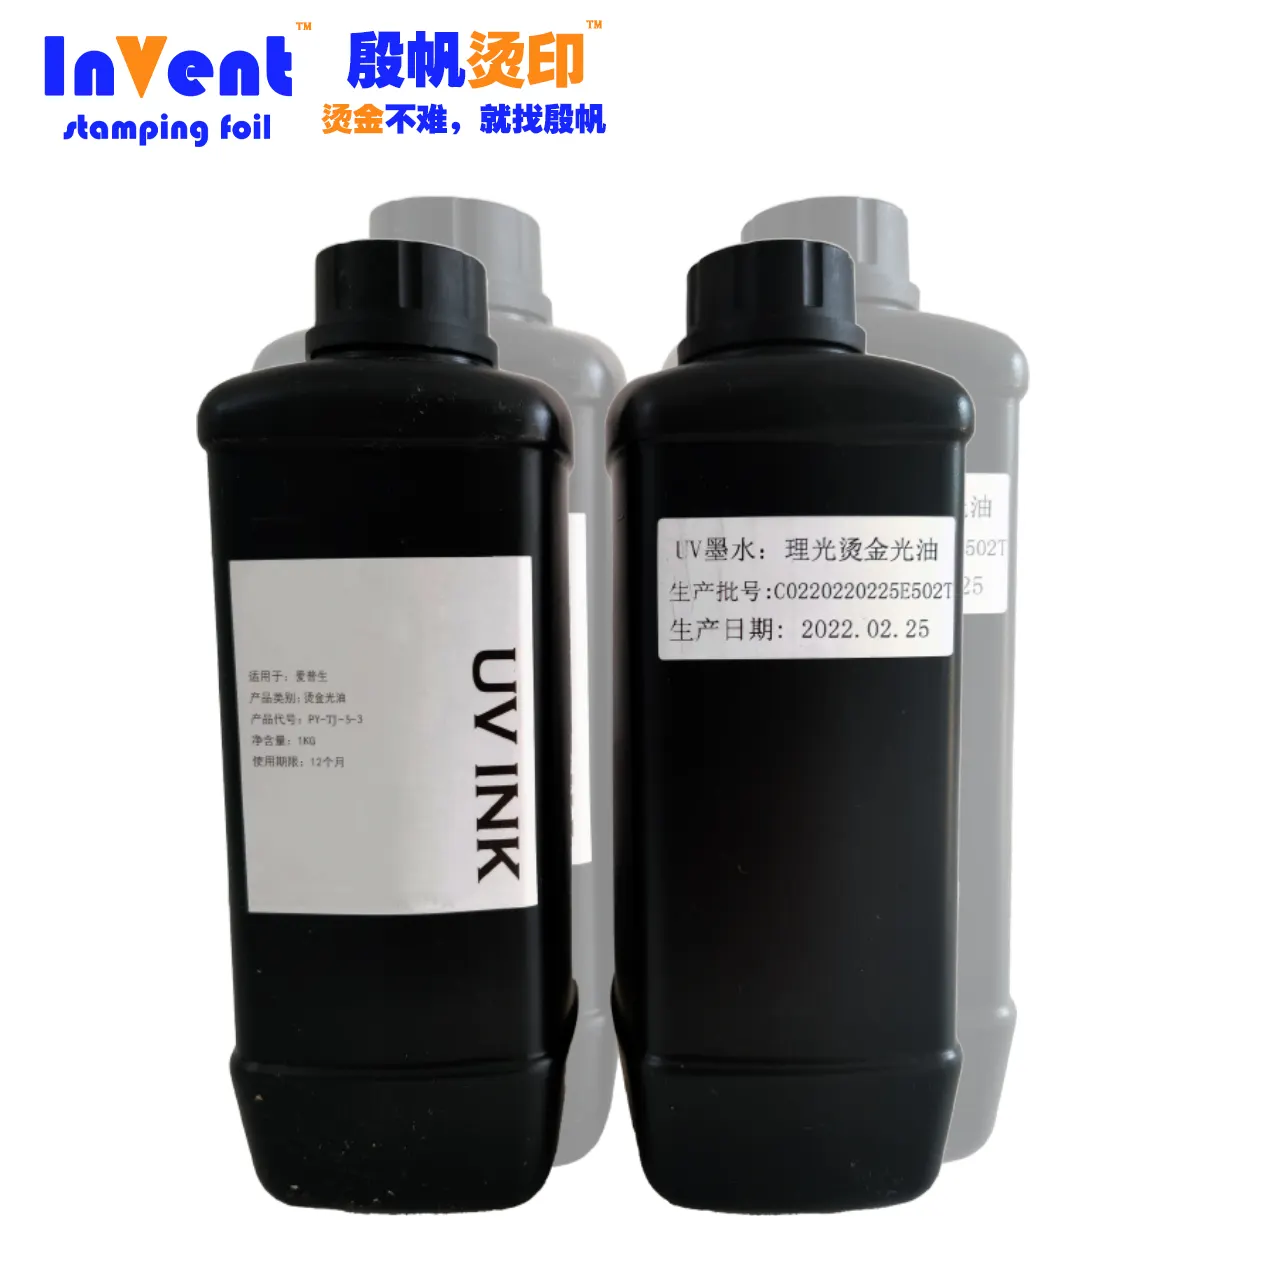 Effetto di goffratura 3D UV timbring vernice speciale UV Bronzing vernice utilizzata con foglio di stampaggio per stampante UV Epson DX5 XP600 TX800